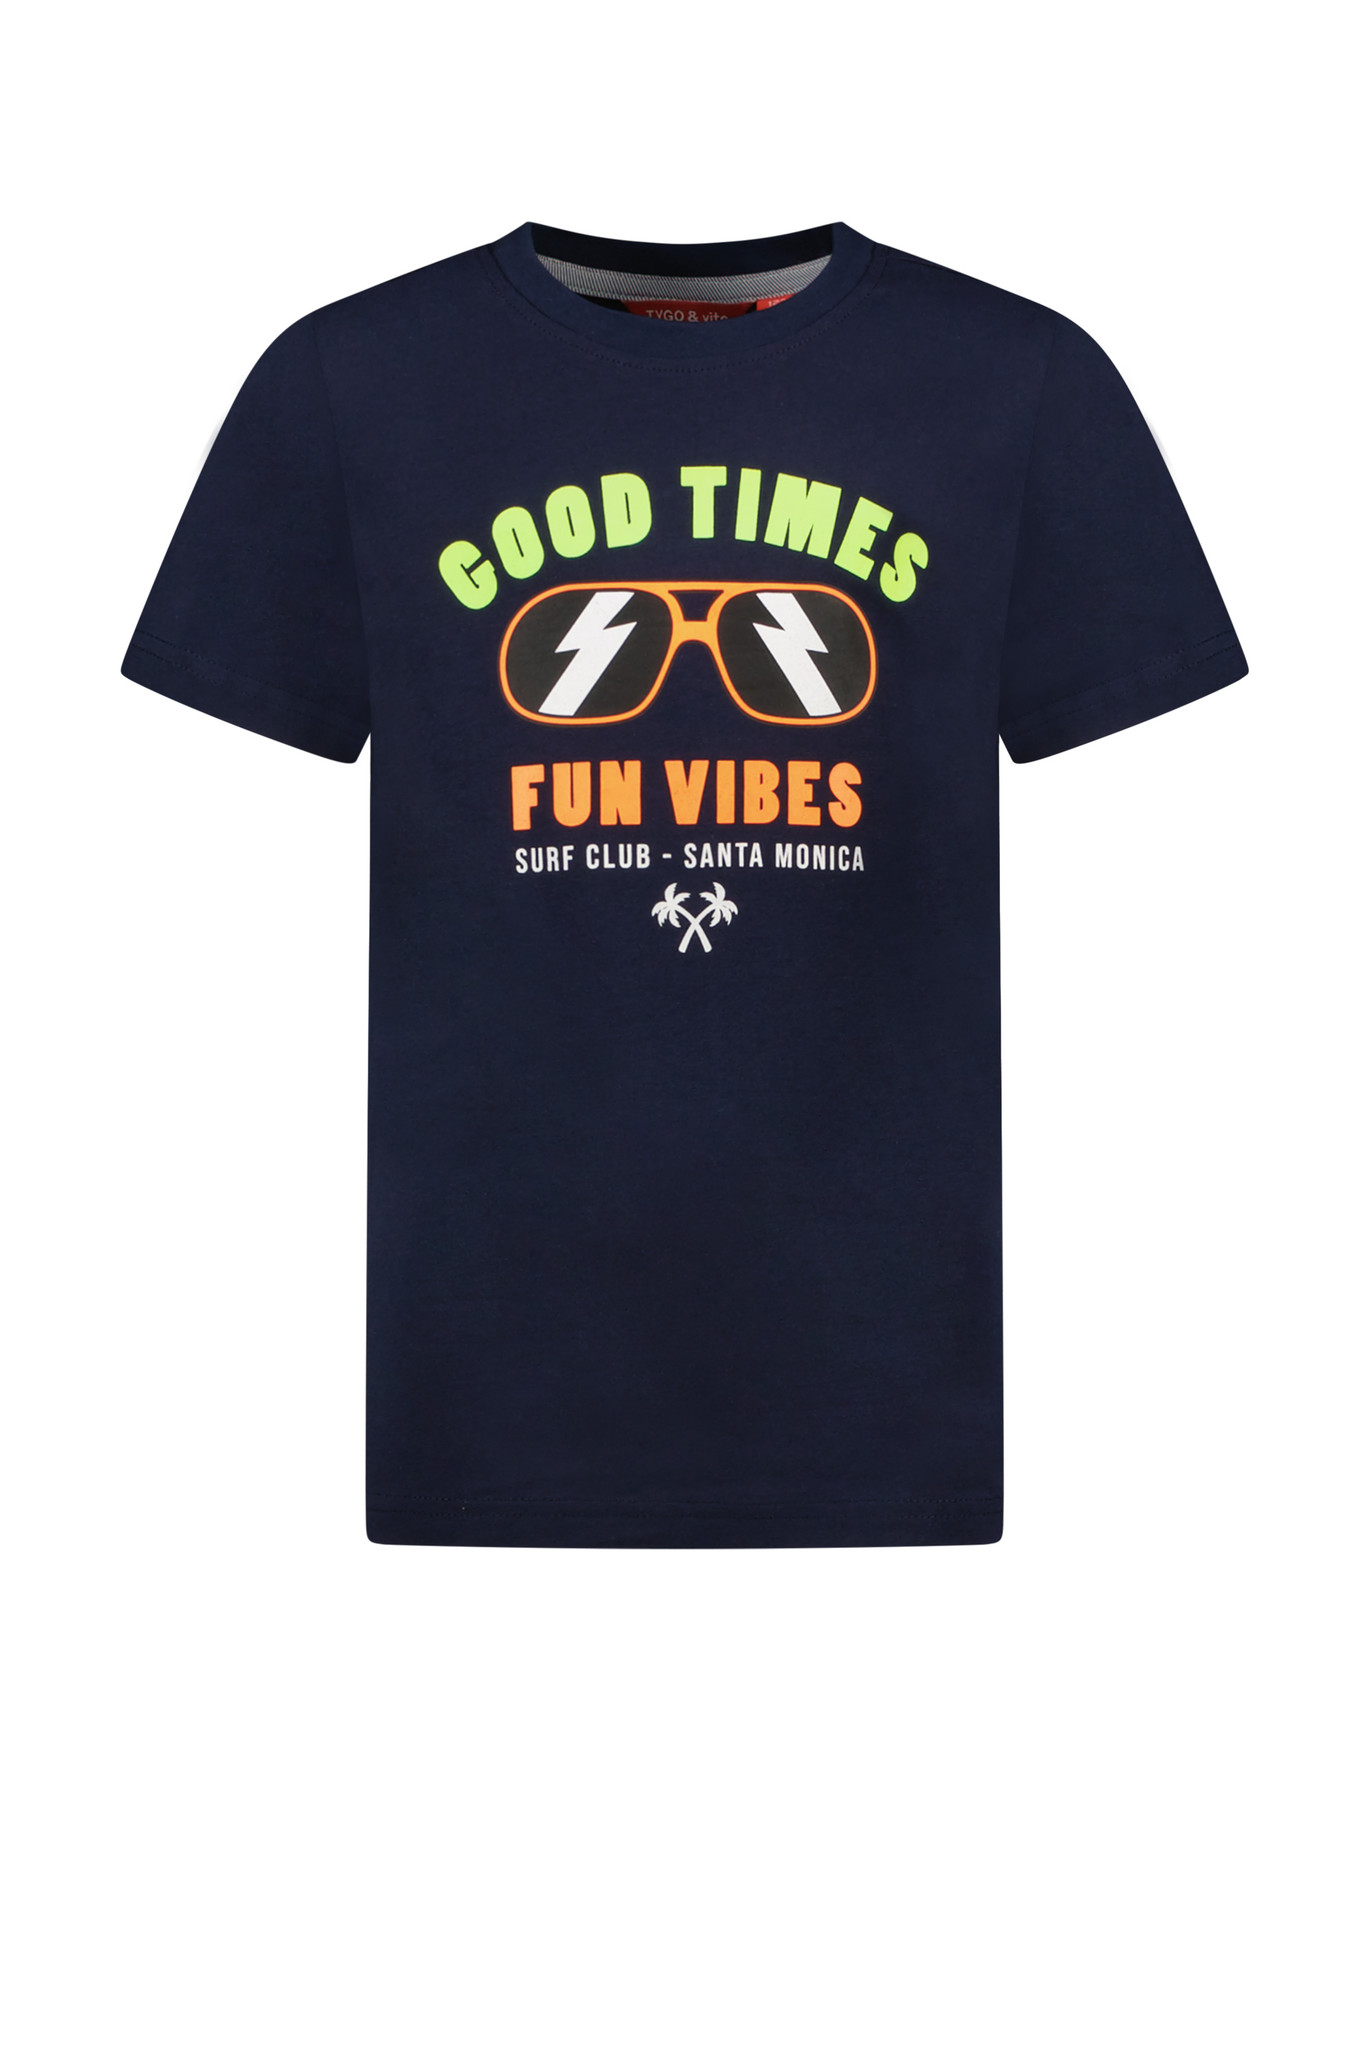 Tygo & Vito Jongens t-shirt Fun vibes - Navy blauw